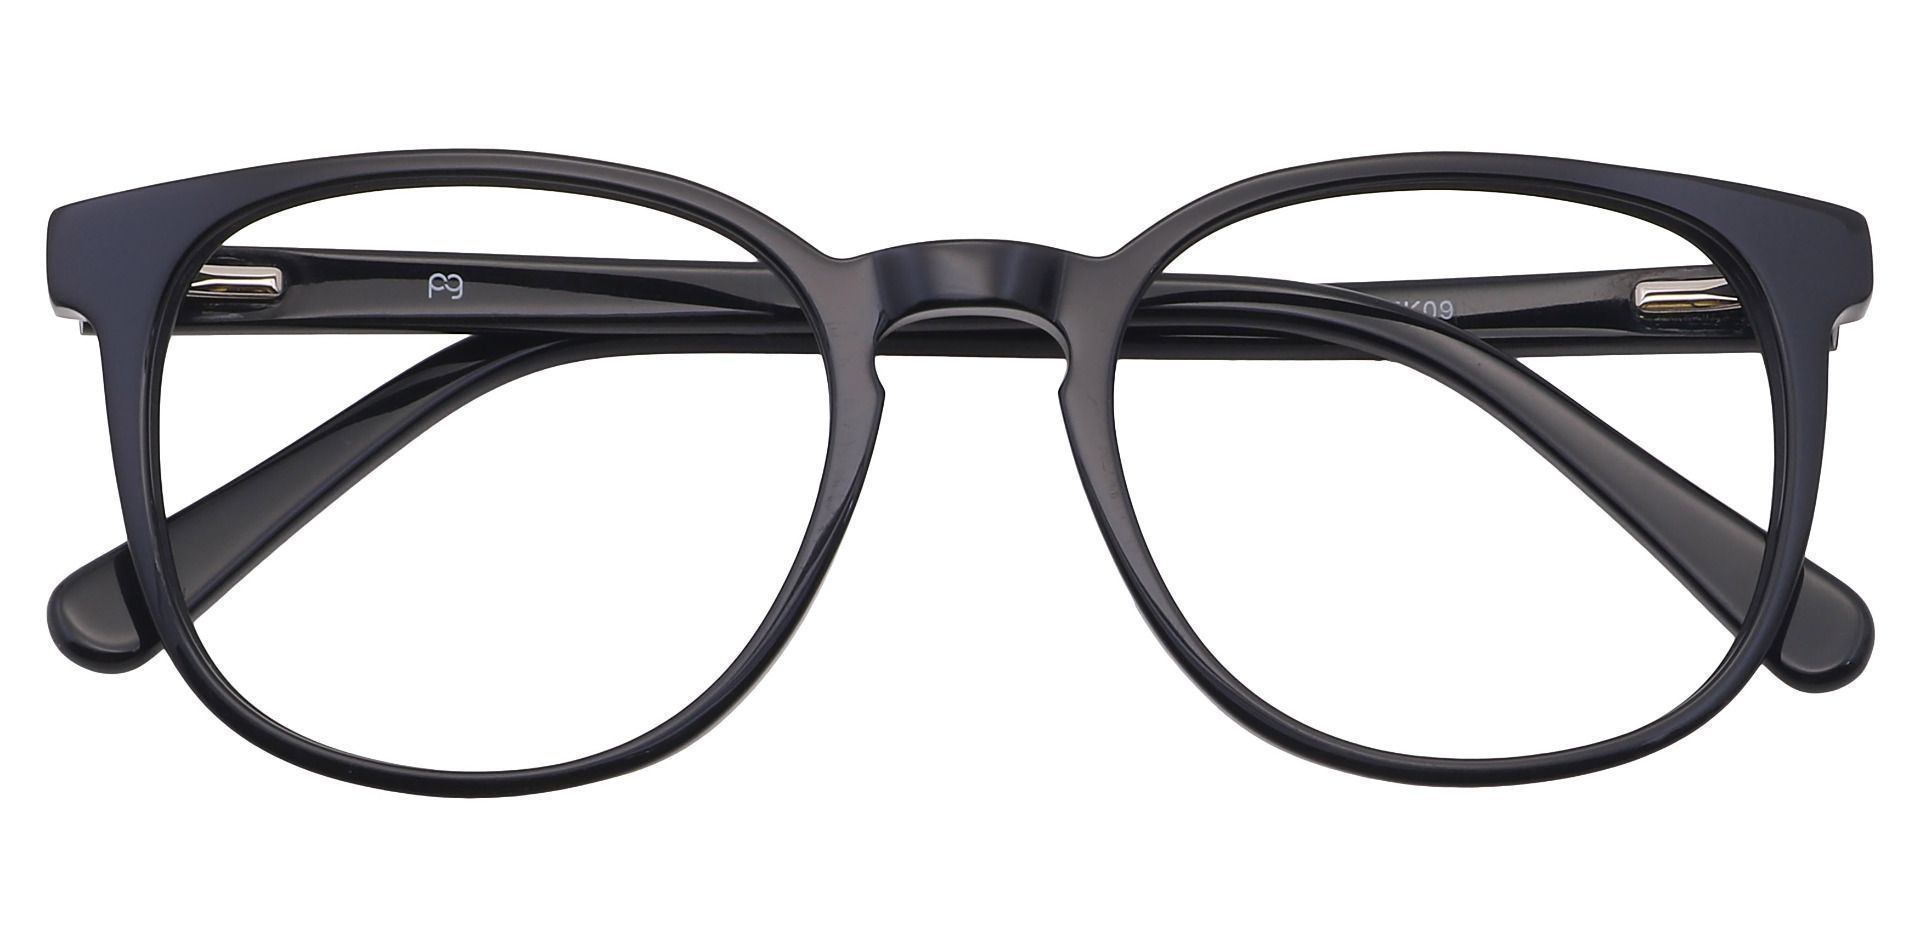 Nebula Round Eyeglasses Frame - Black